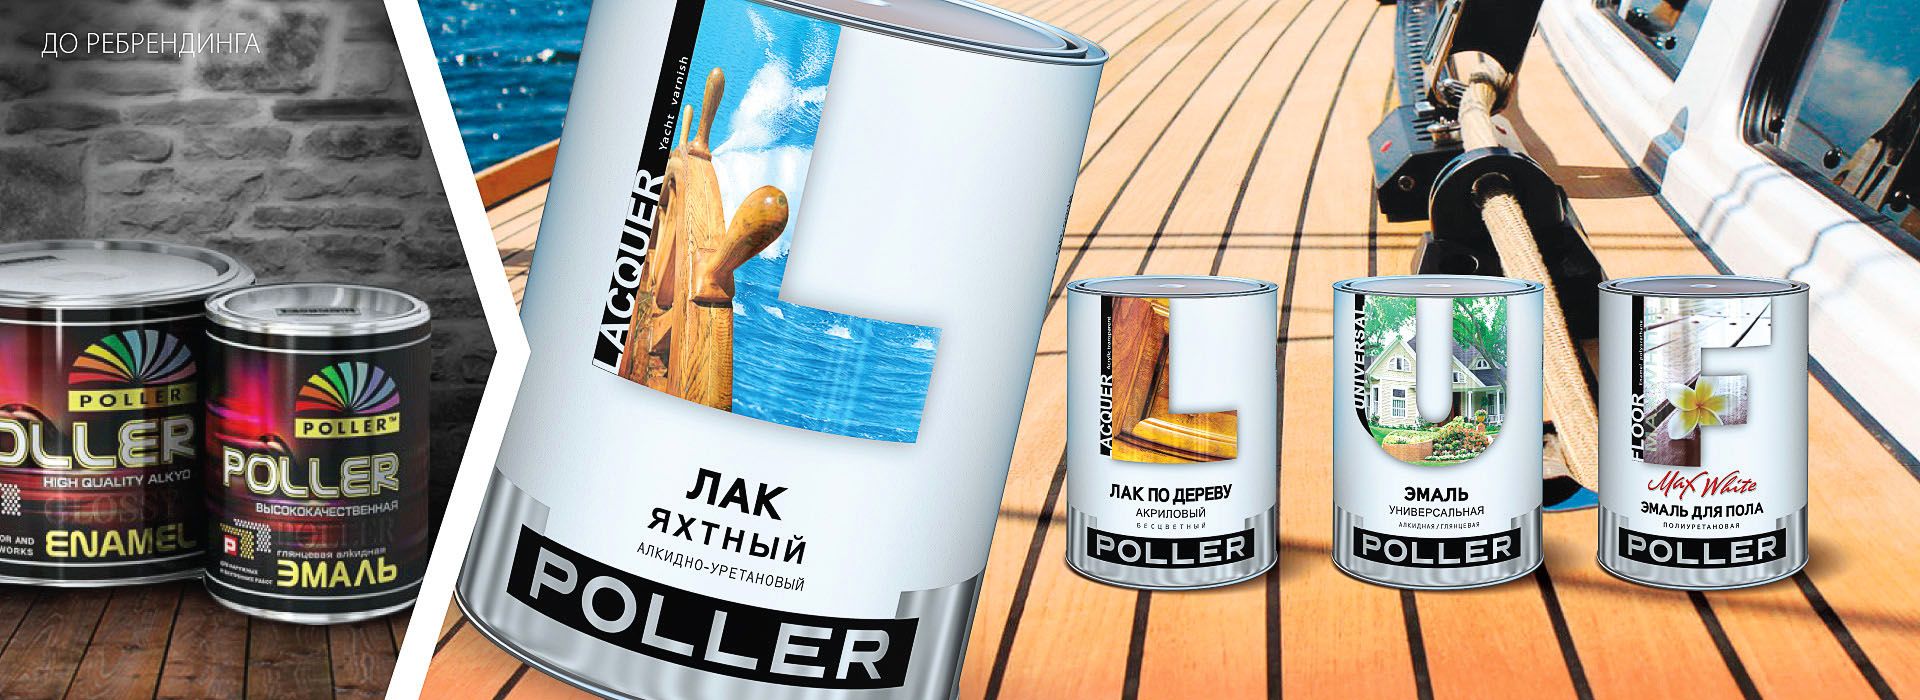 Разработать дизайн этикетки для лакокрасочной продукции «Poller»